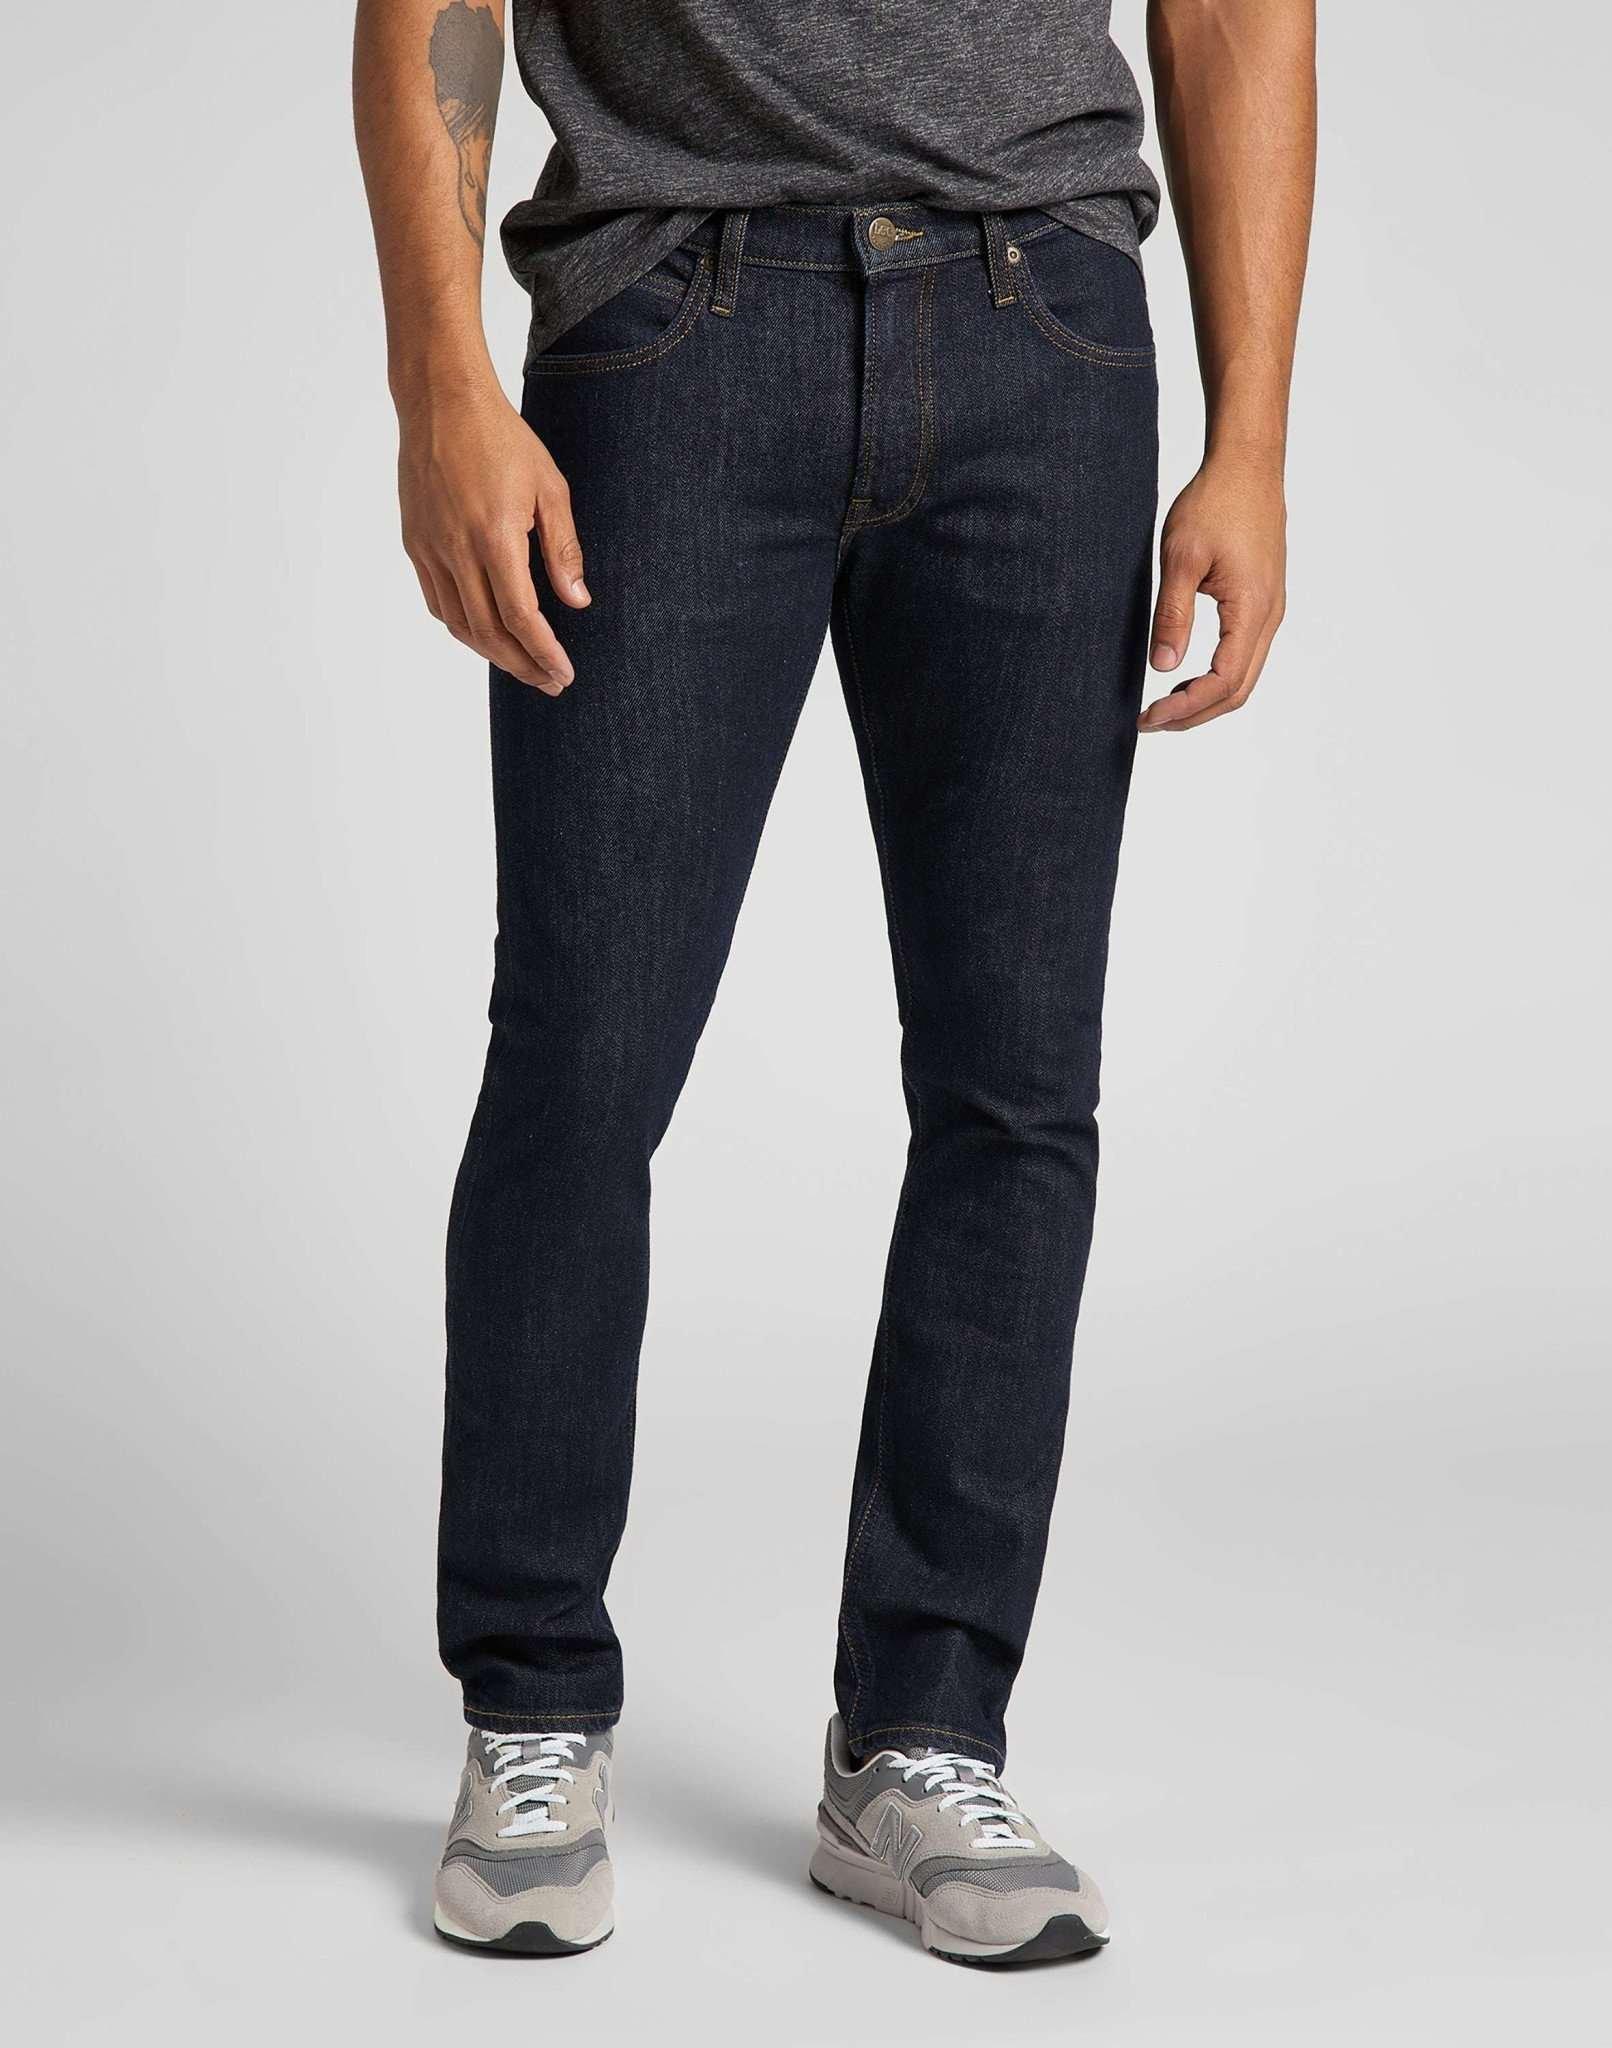 Jeans Slim Fit Luke Herren Blau L32/W33 von Lee